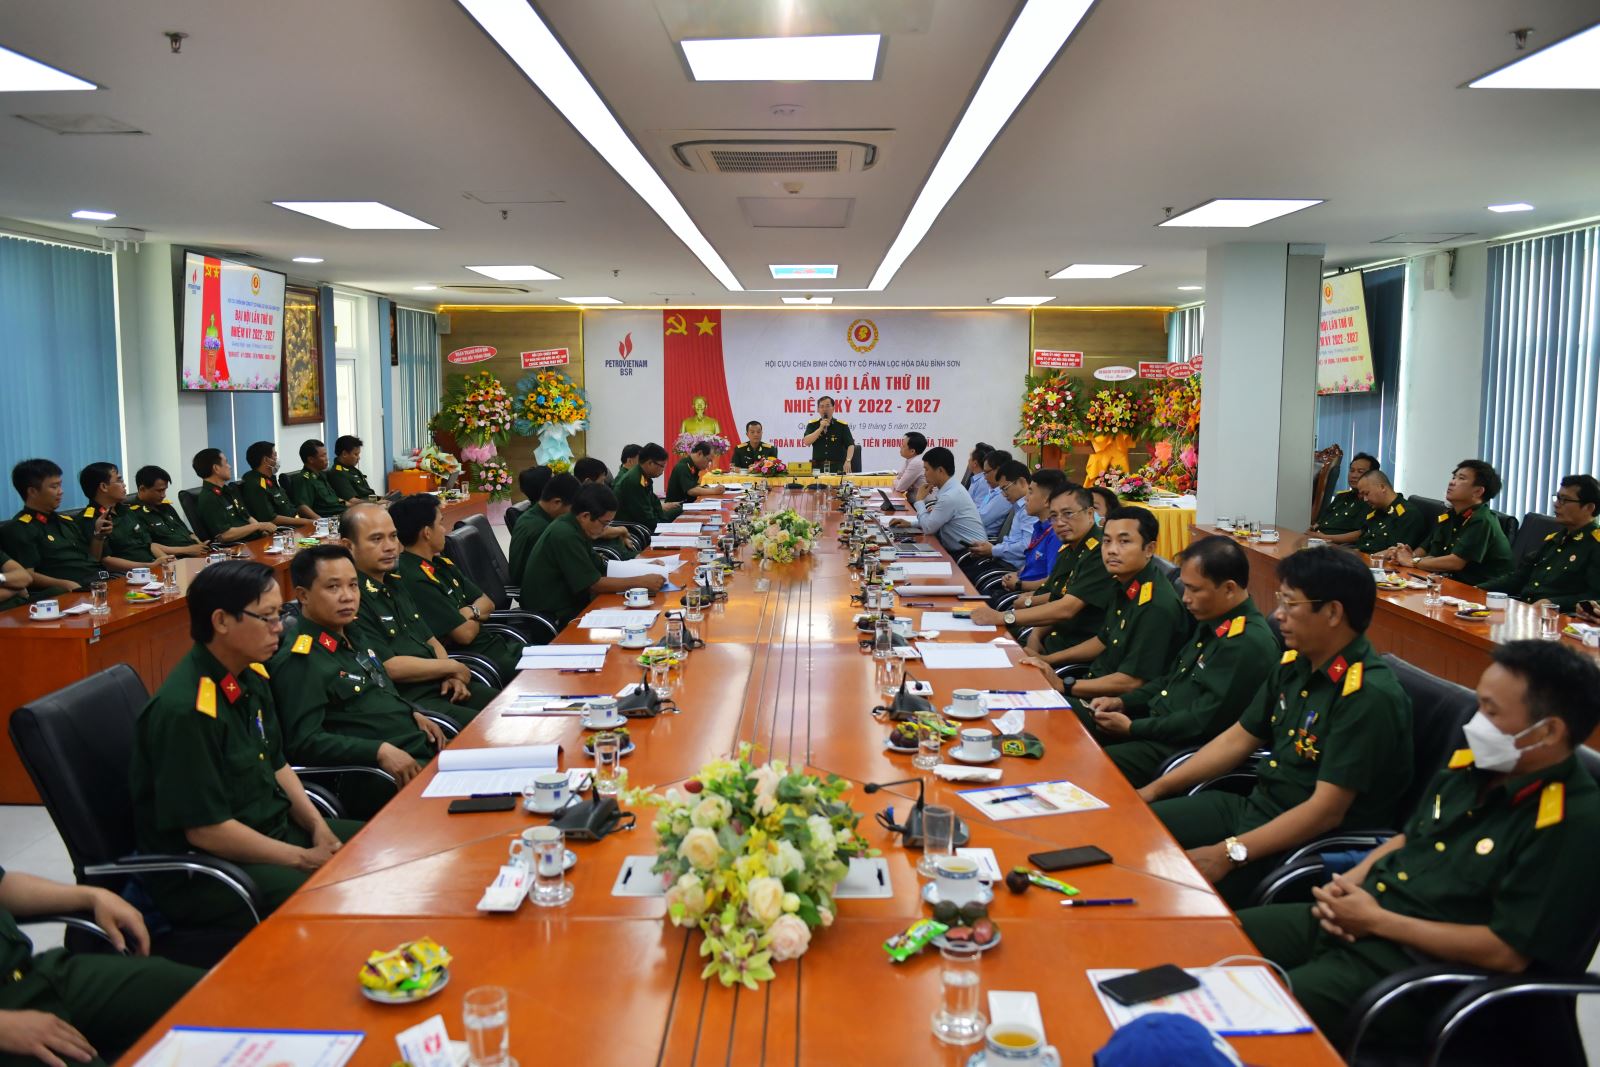 Hội Cựu chiến binh Lọc hóa dầu Bình Sơn tổ chức Đại hội lần thứ III nhiệm kỳ 2022 - 2027